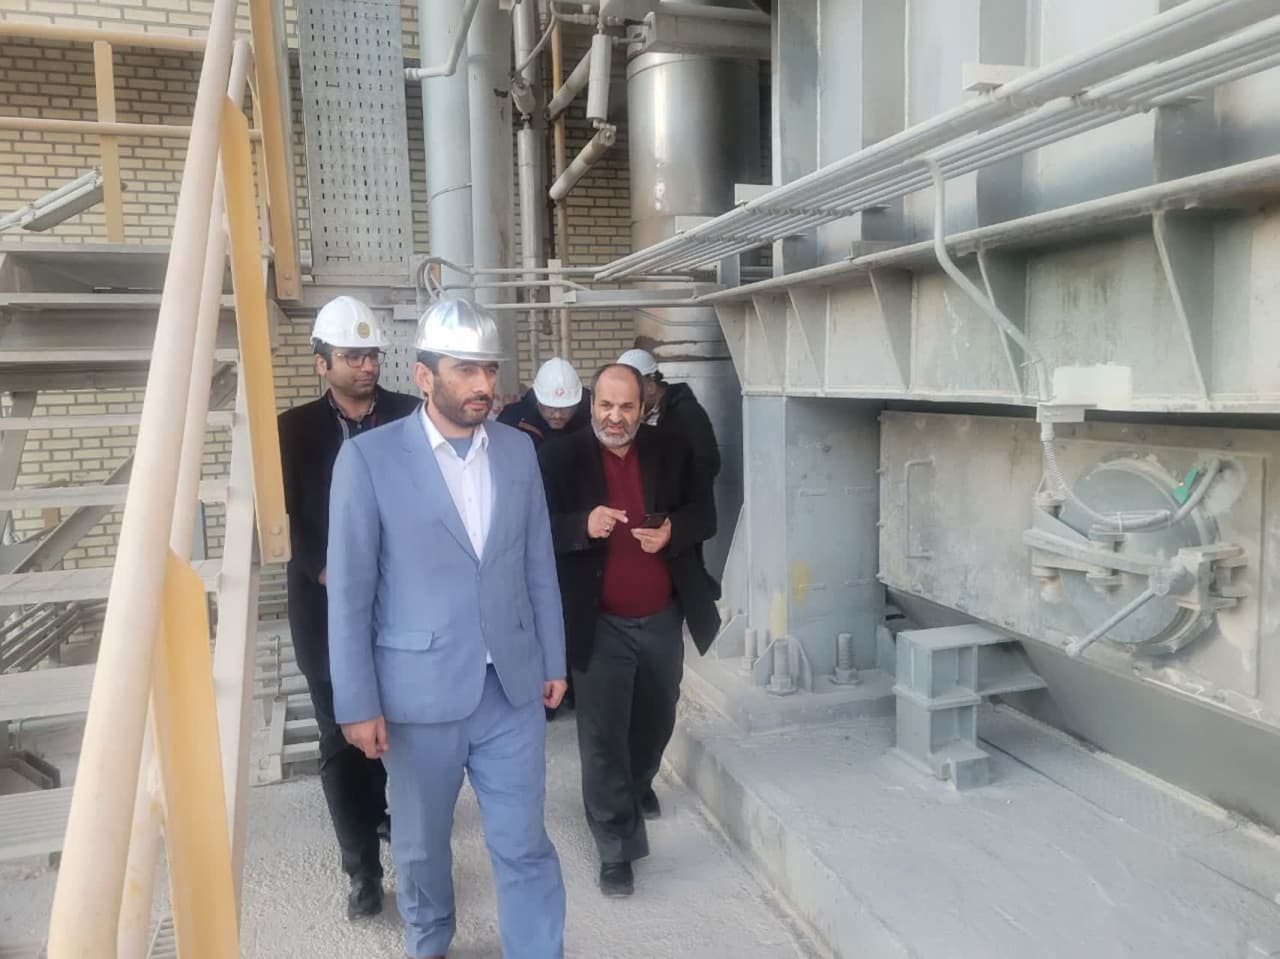 بازدید مهندس بابک اشجع، مدیرعامل شرکت متمم از کارخانه آهک هیدراته اهر (تصاویر)